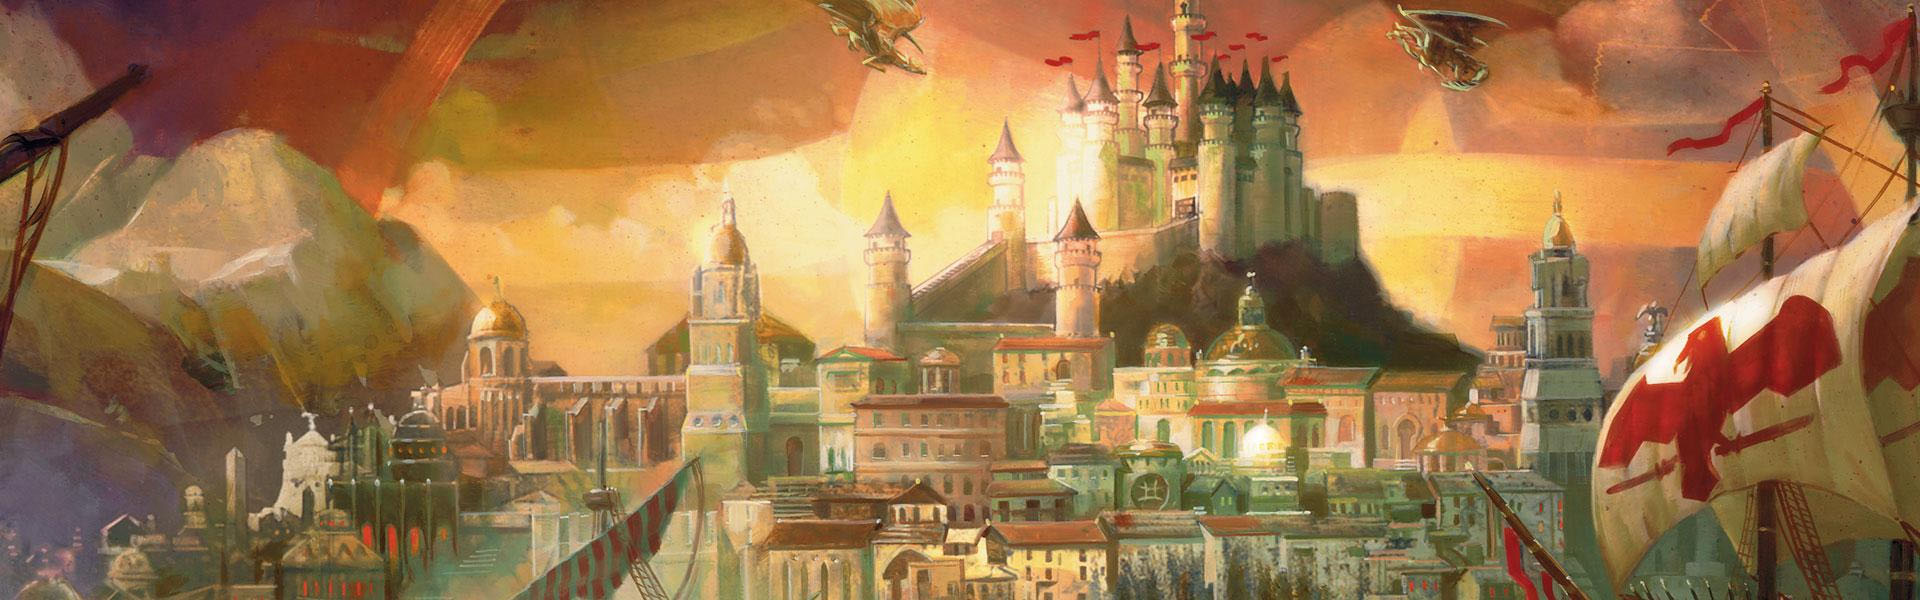 Forgotten Realms: The City of Splendors